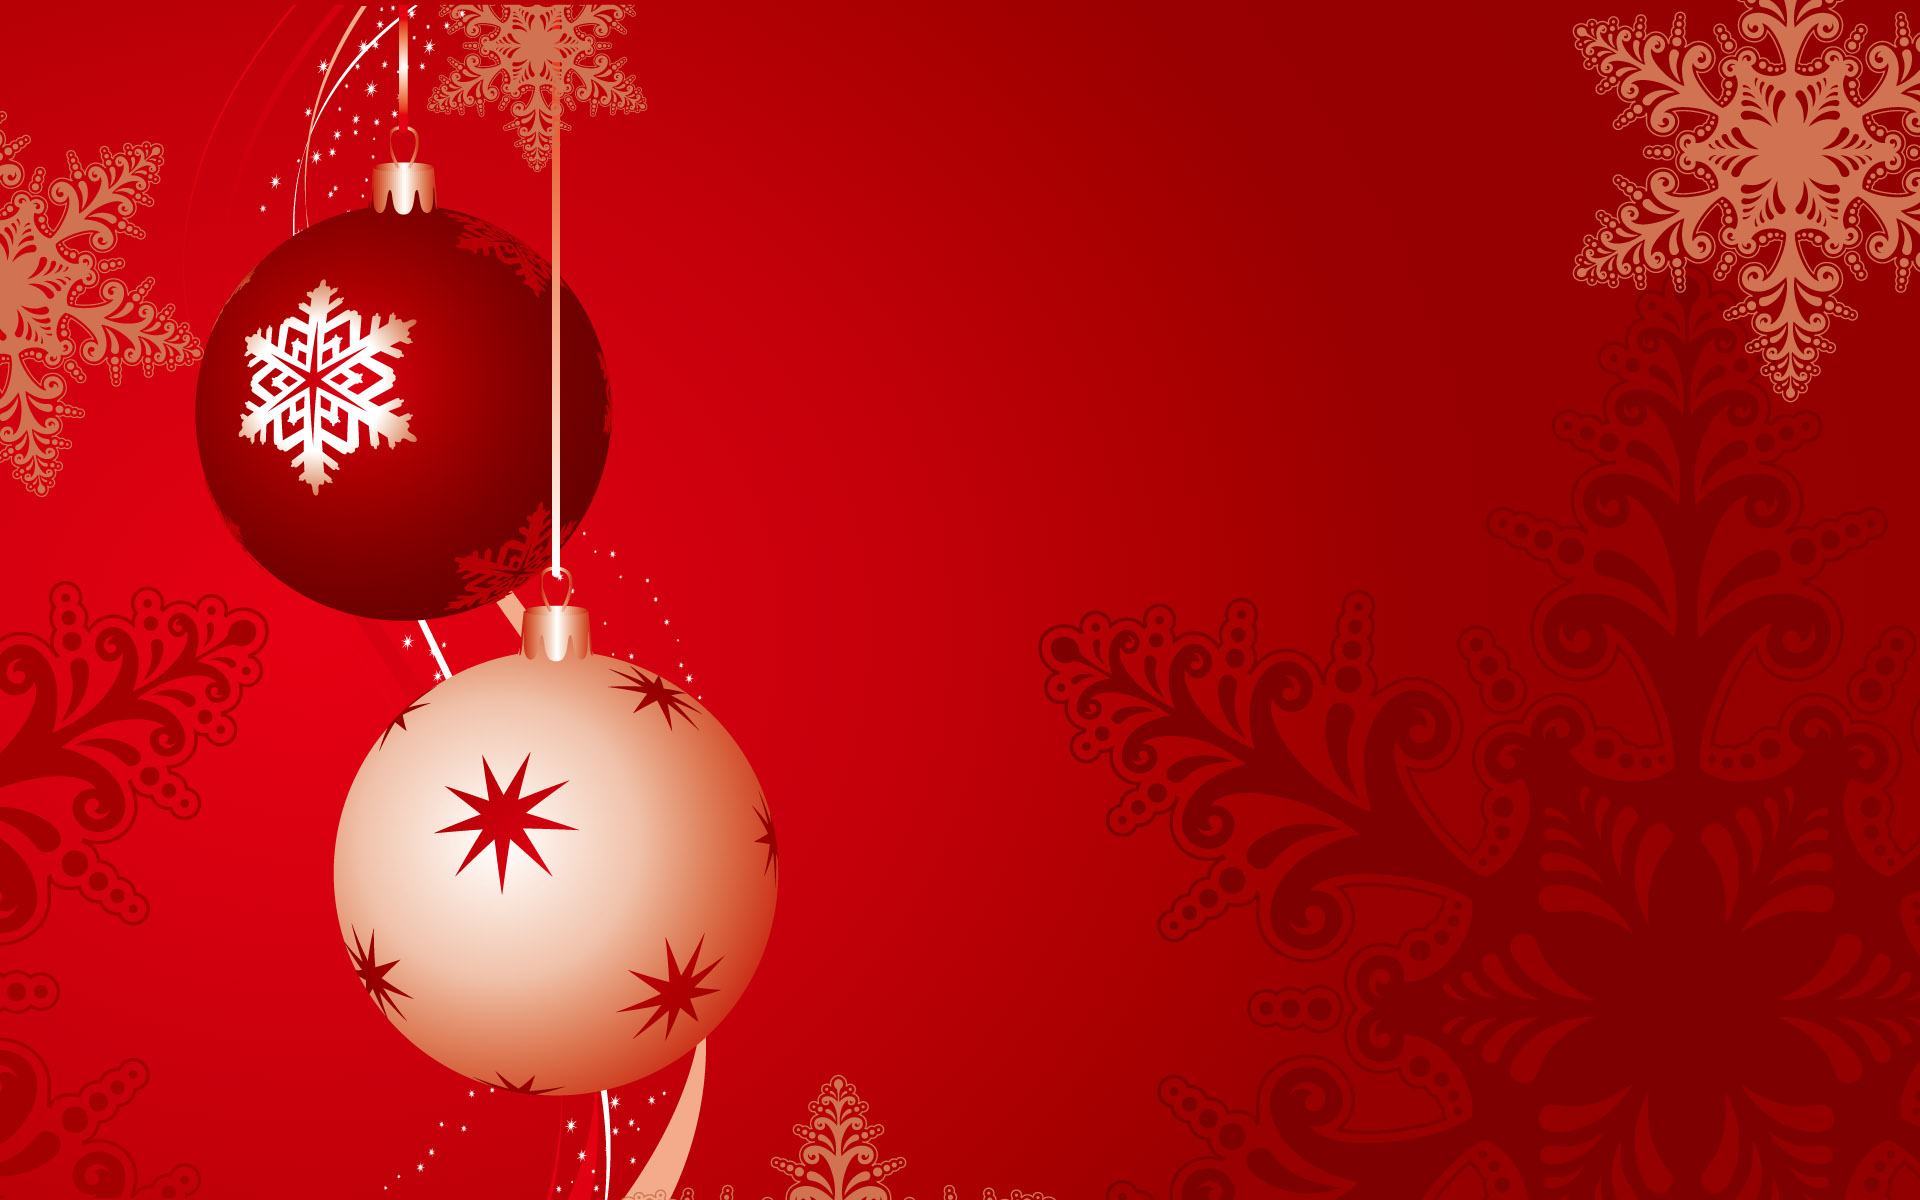 Скачать обои бесплатно Праздники, Игрушки, Фон, Рождество (Christmas Xmas), Новый Год (New Year) картинка на рабочий стол ПК